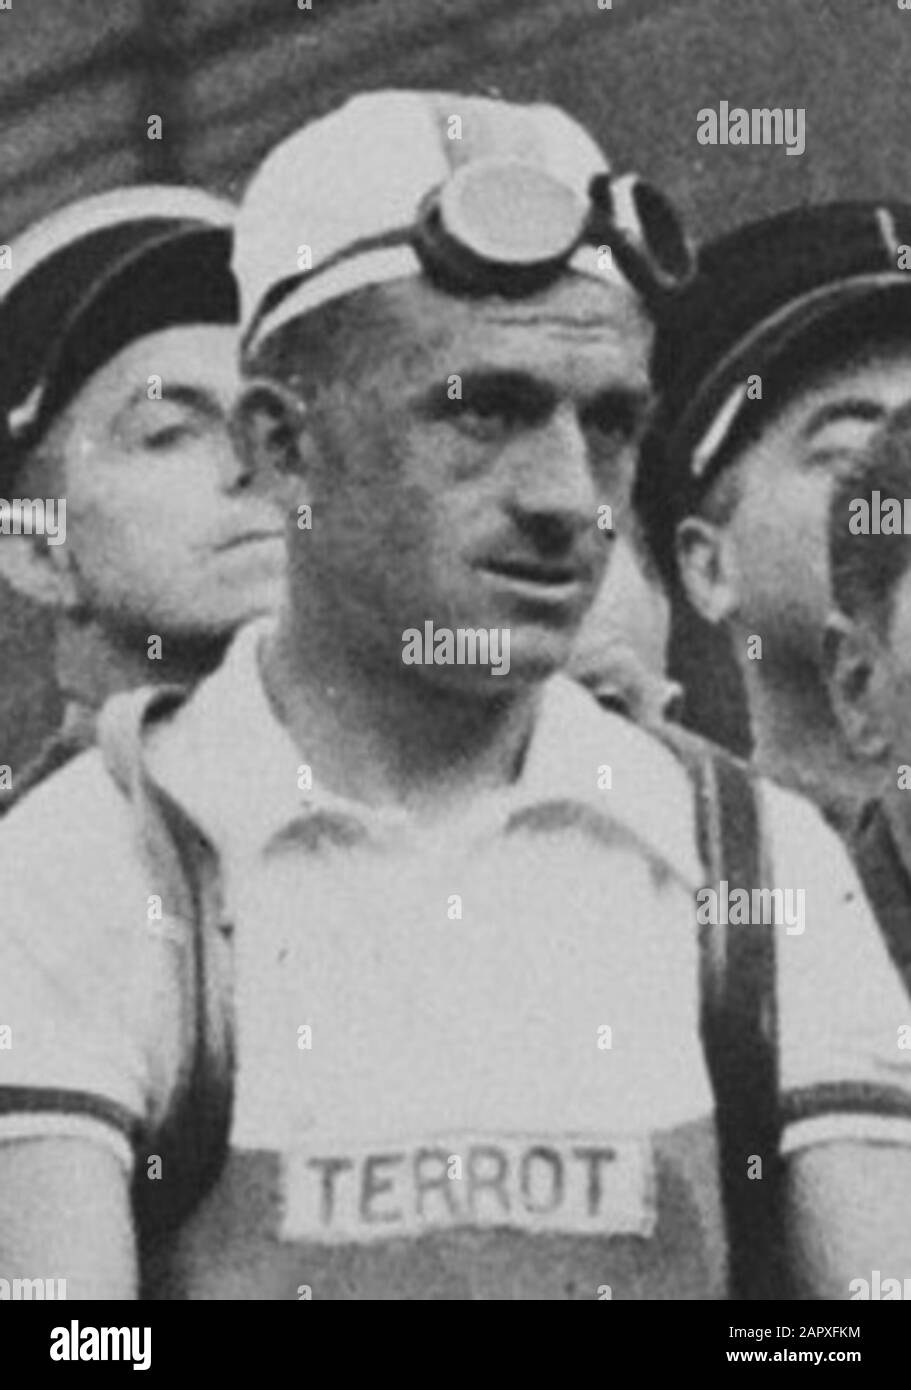 Tour de France 1950. Die niederländische Mannschaft am Start in Paris. VL r. (...) Sjefke (Joseph) Jansen (...); Stockfoto